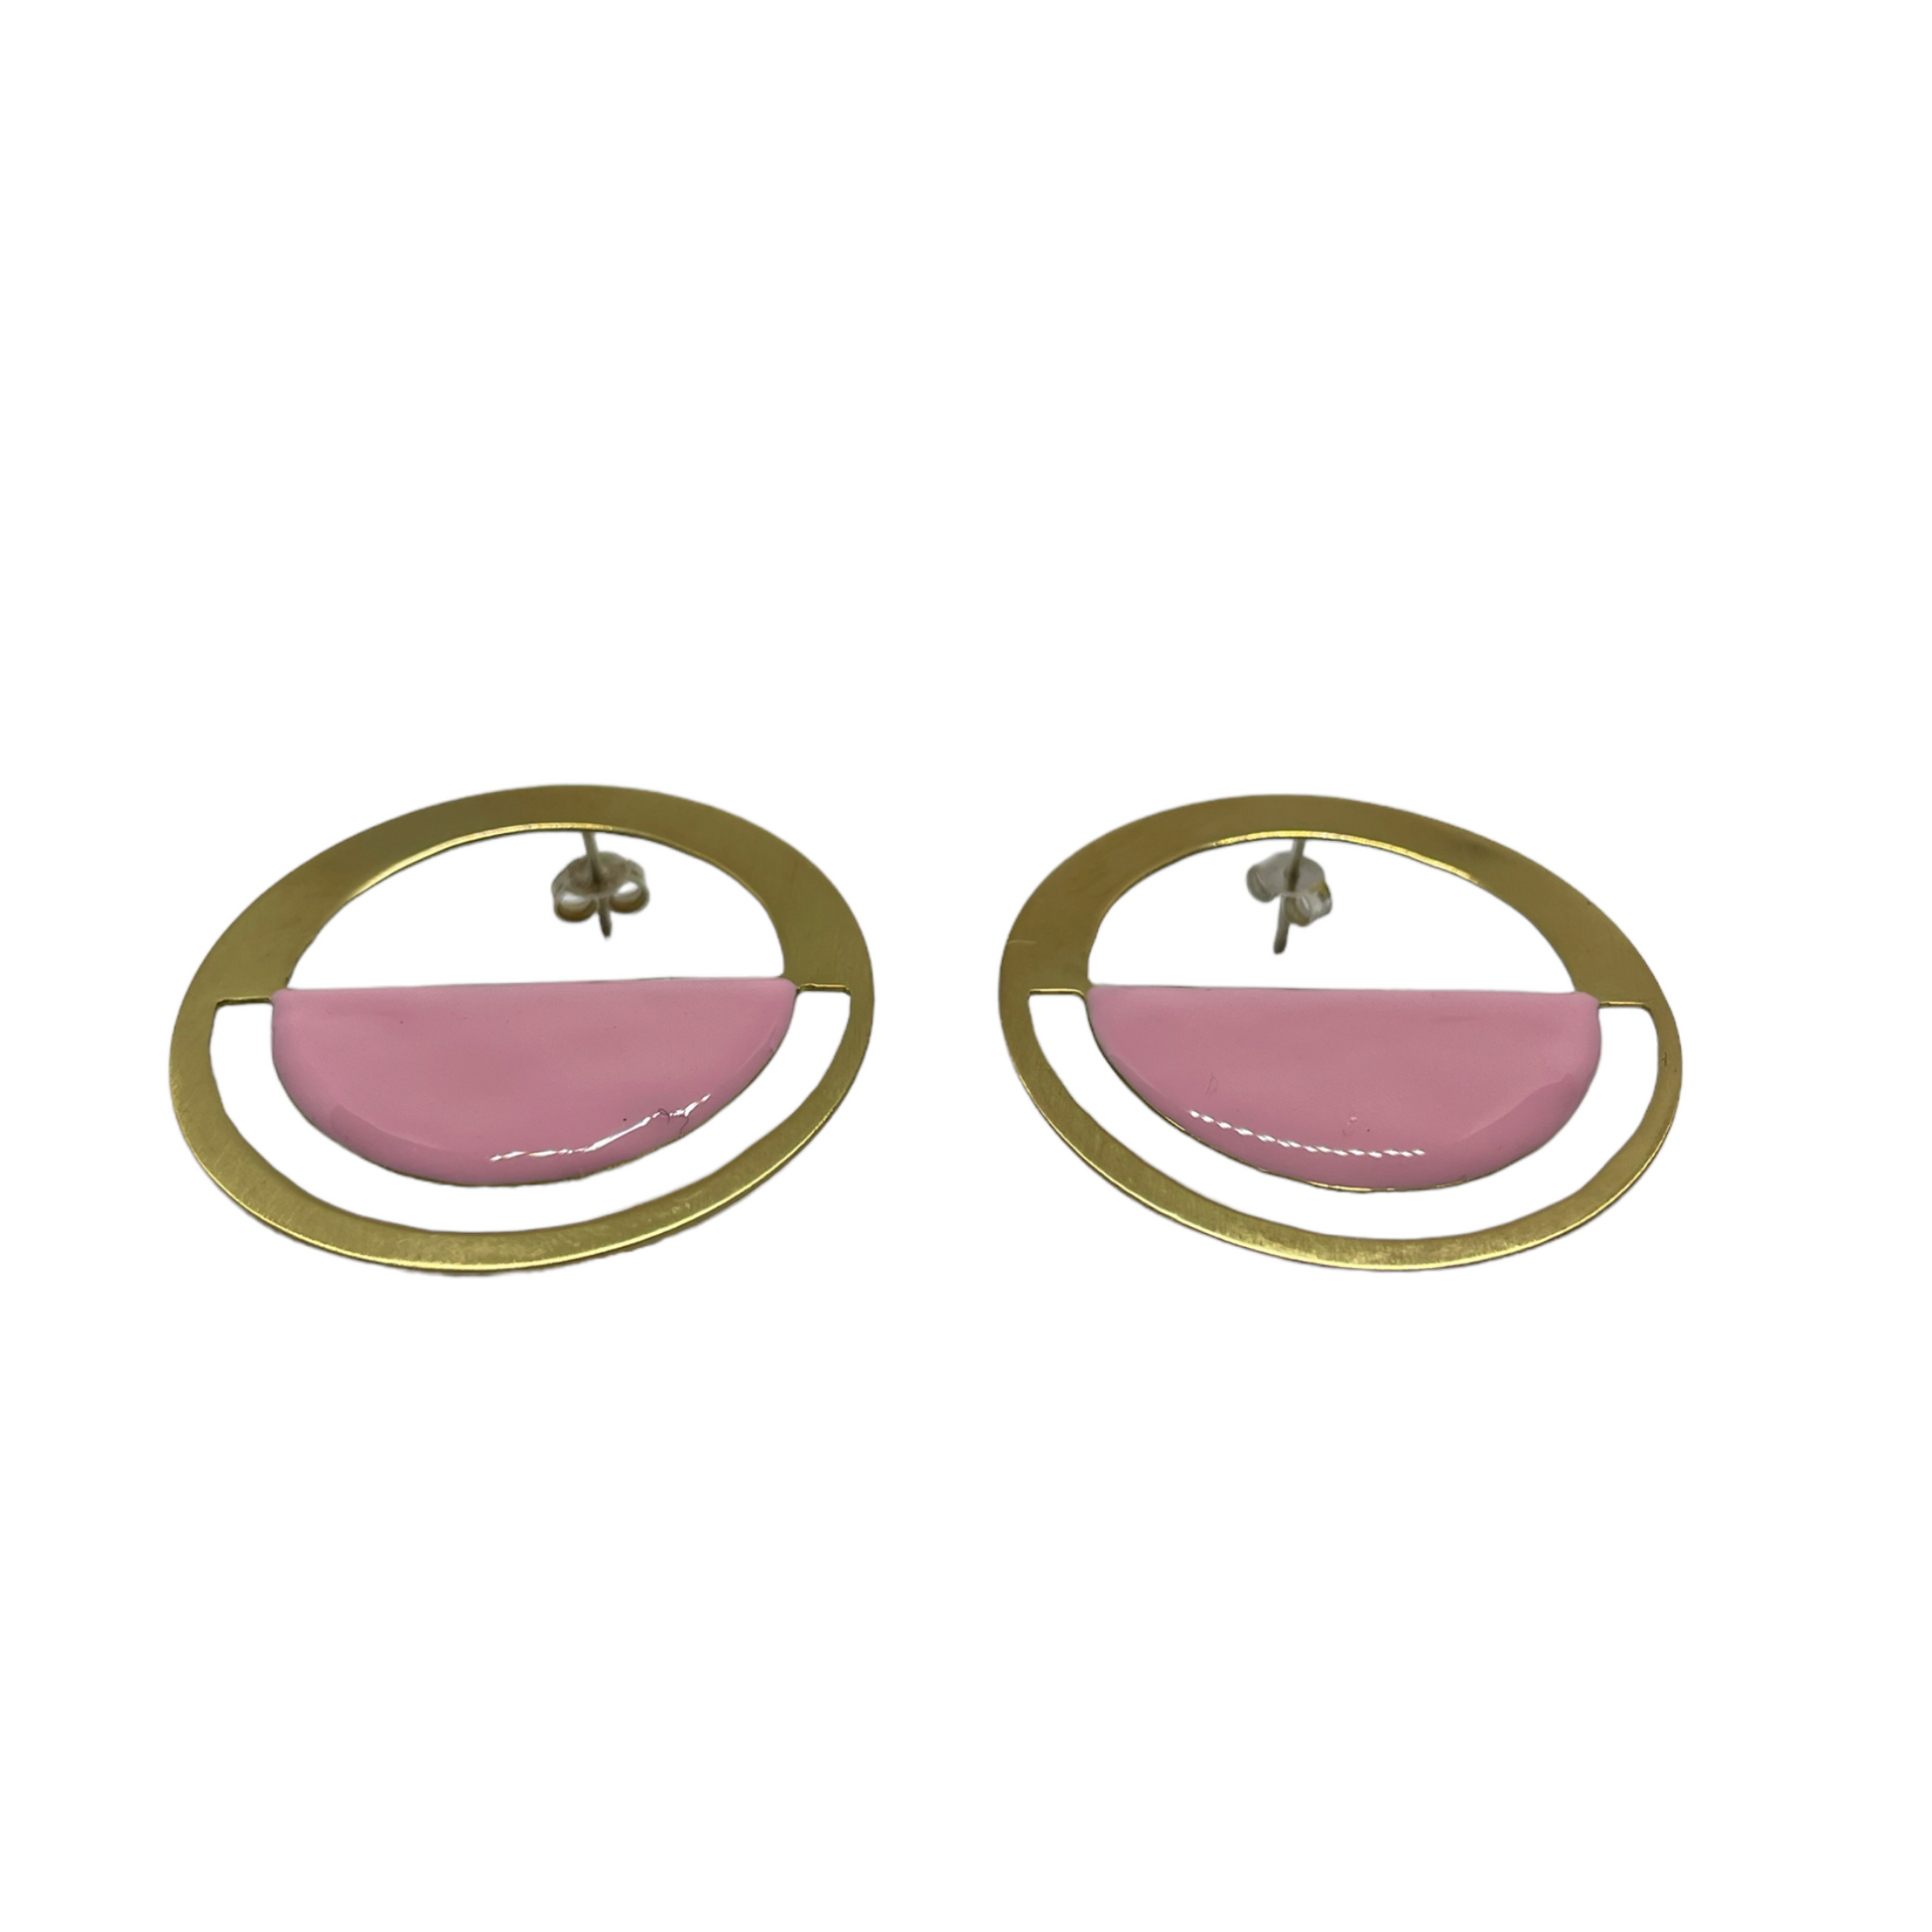  Brass earrings with resin | Allure Earrings- CURIUDO